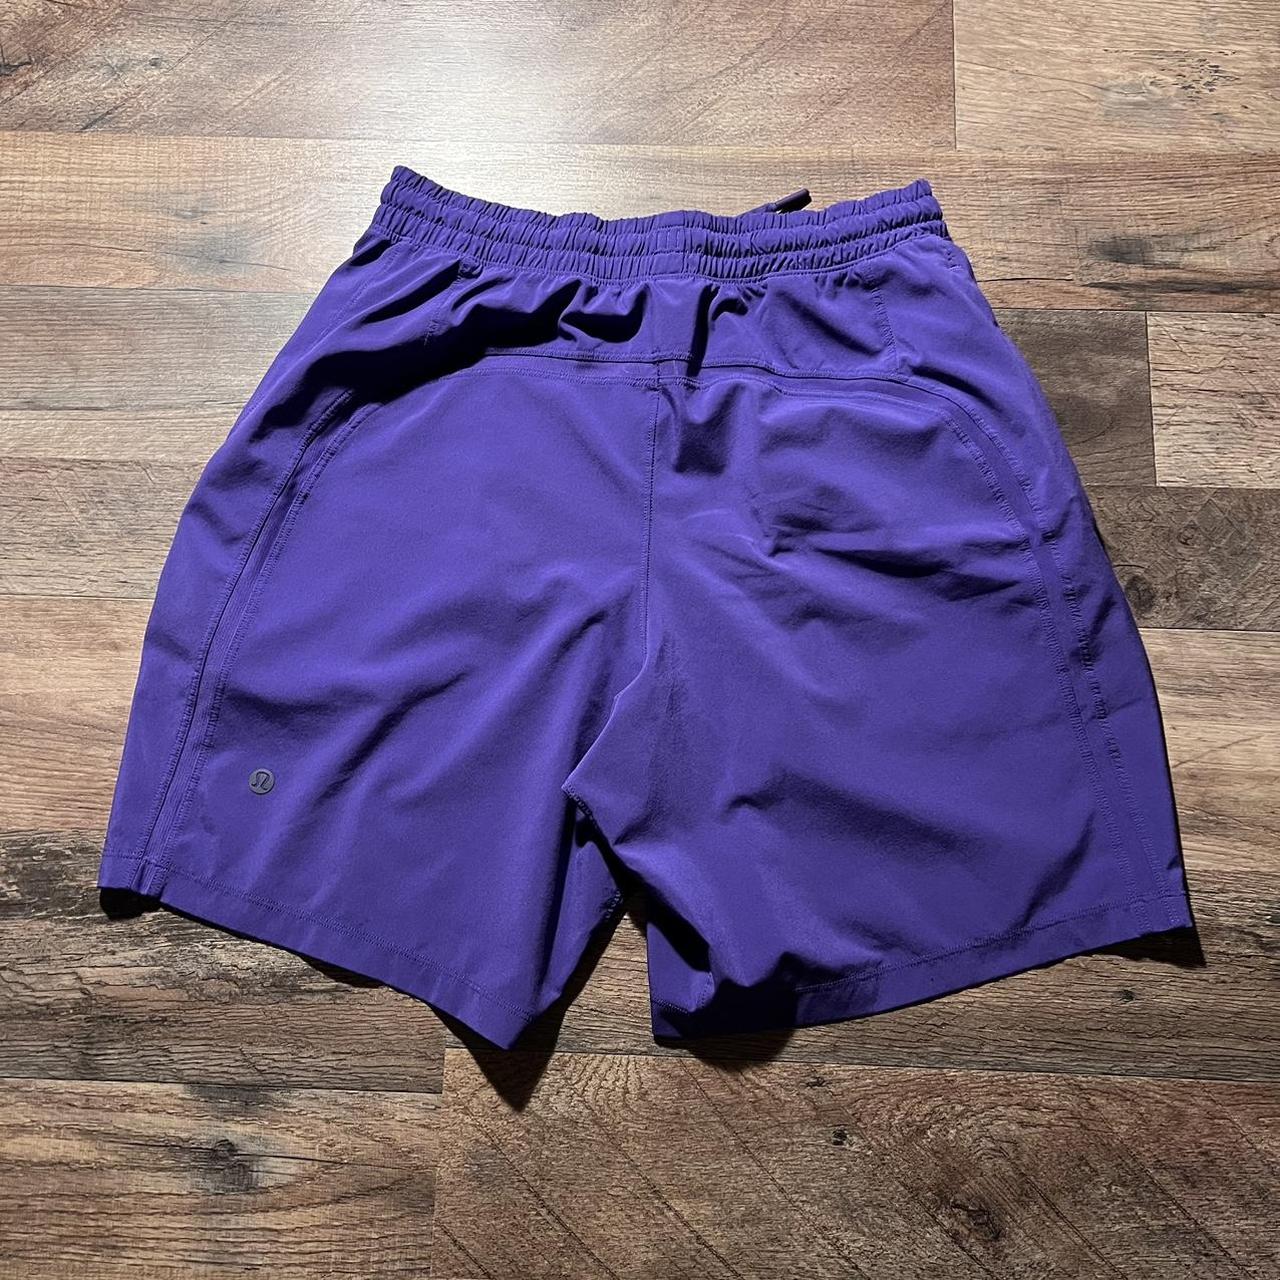 Lululemon Shorts Mens Small Purple Pace Breaker 7”... - Depop